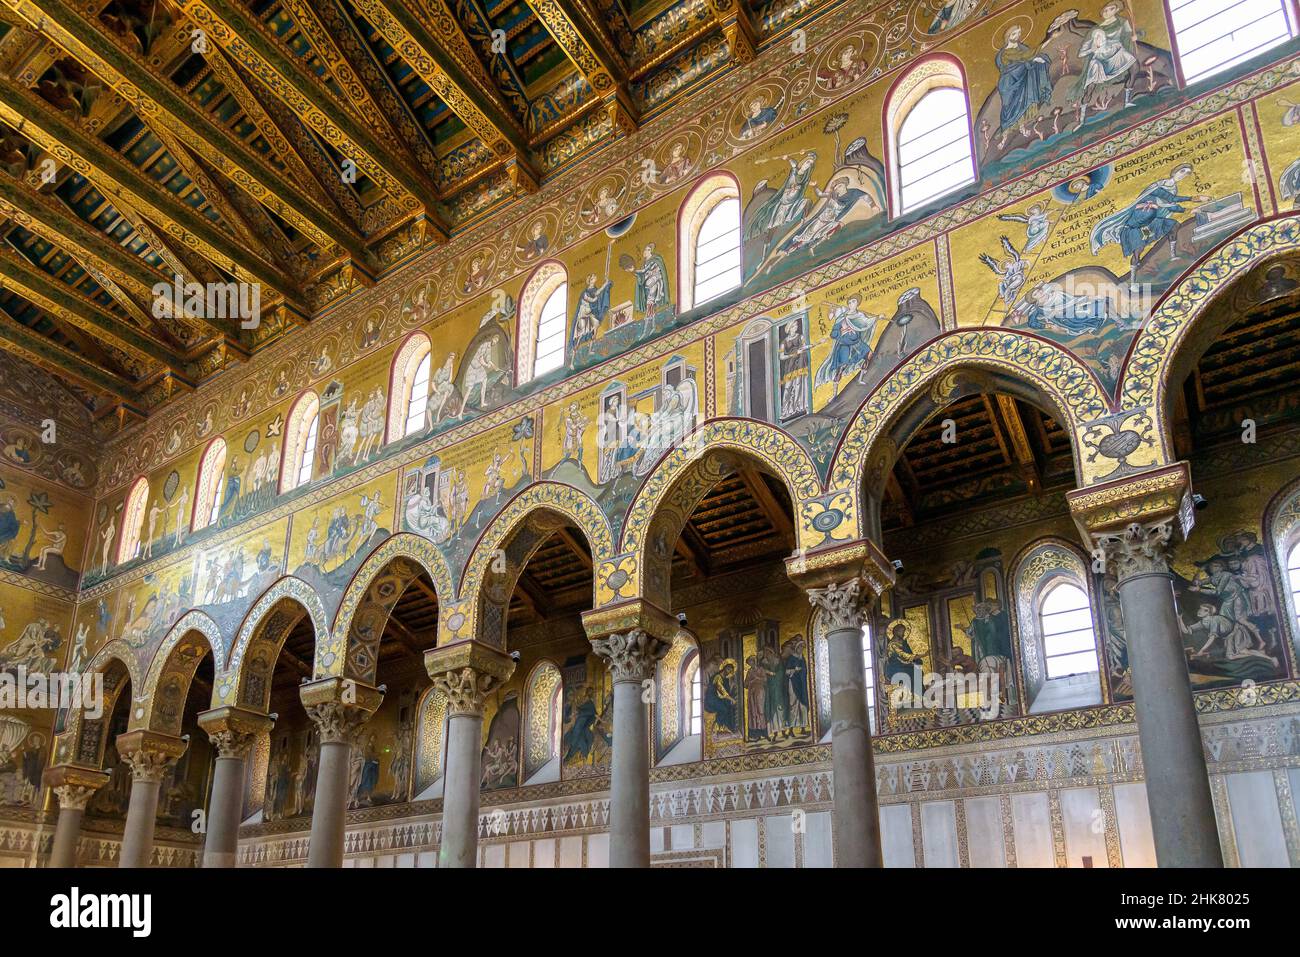 Monreale, Sicilia, Italia - 26 de agosto de 2017: Vista de la nave decorada con frescos de la Catedral de Monreale Foto de stock